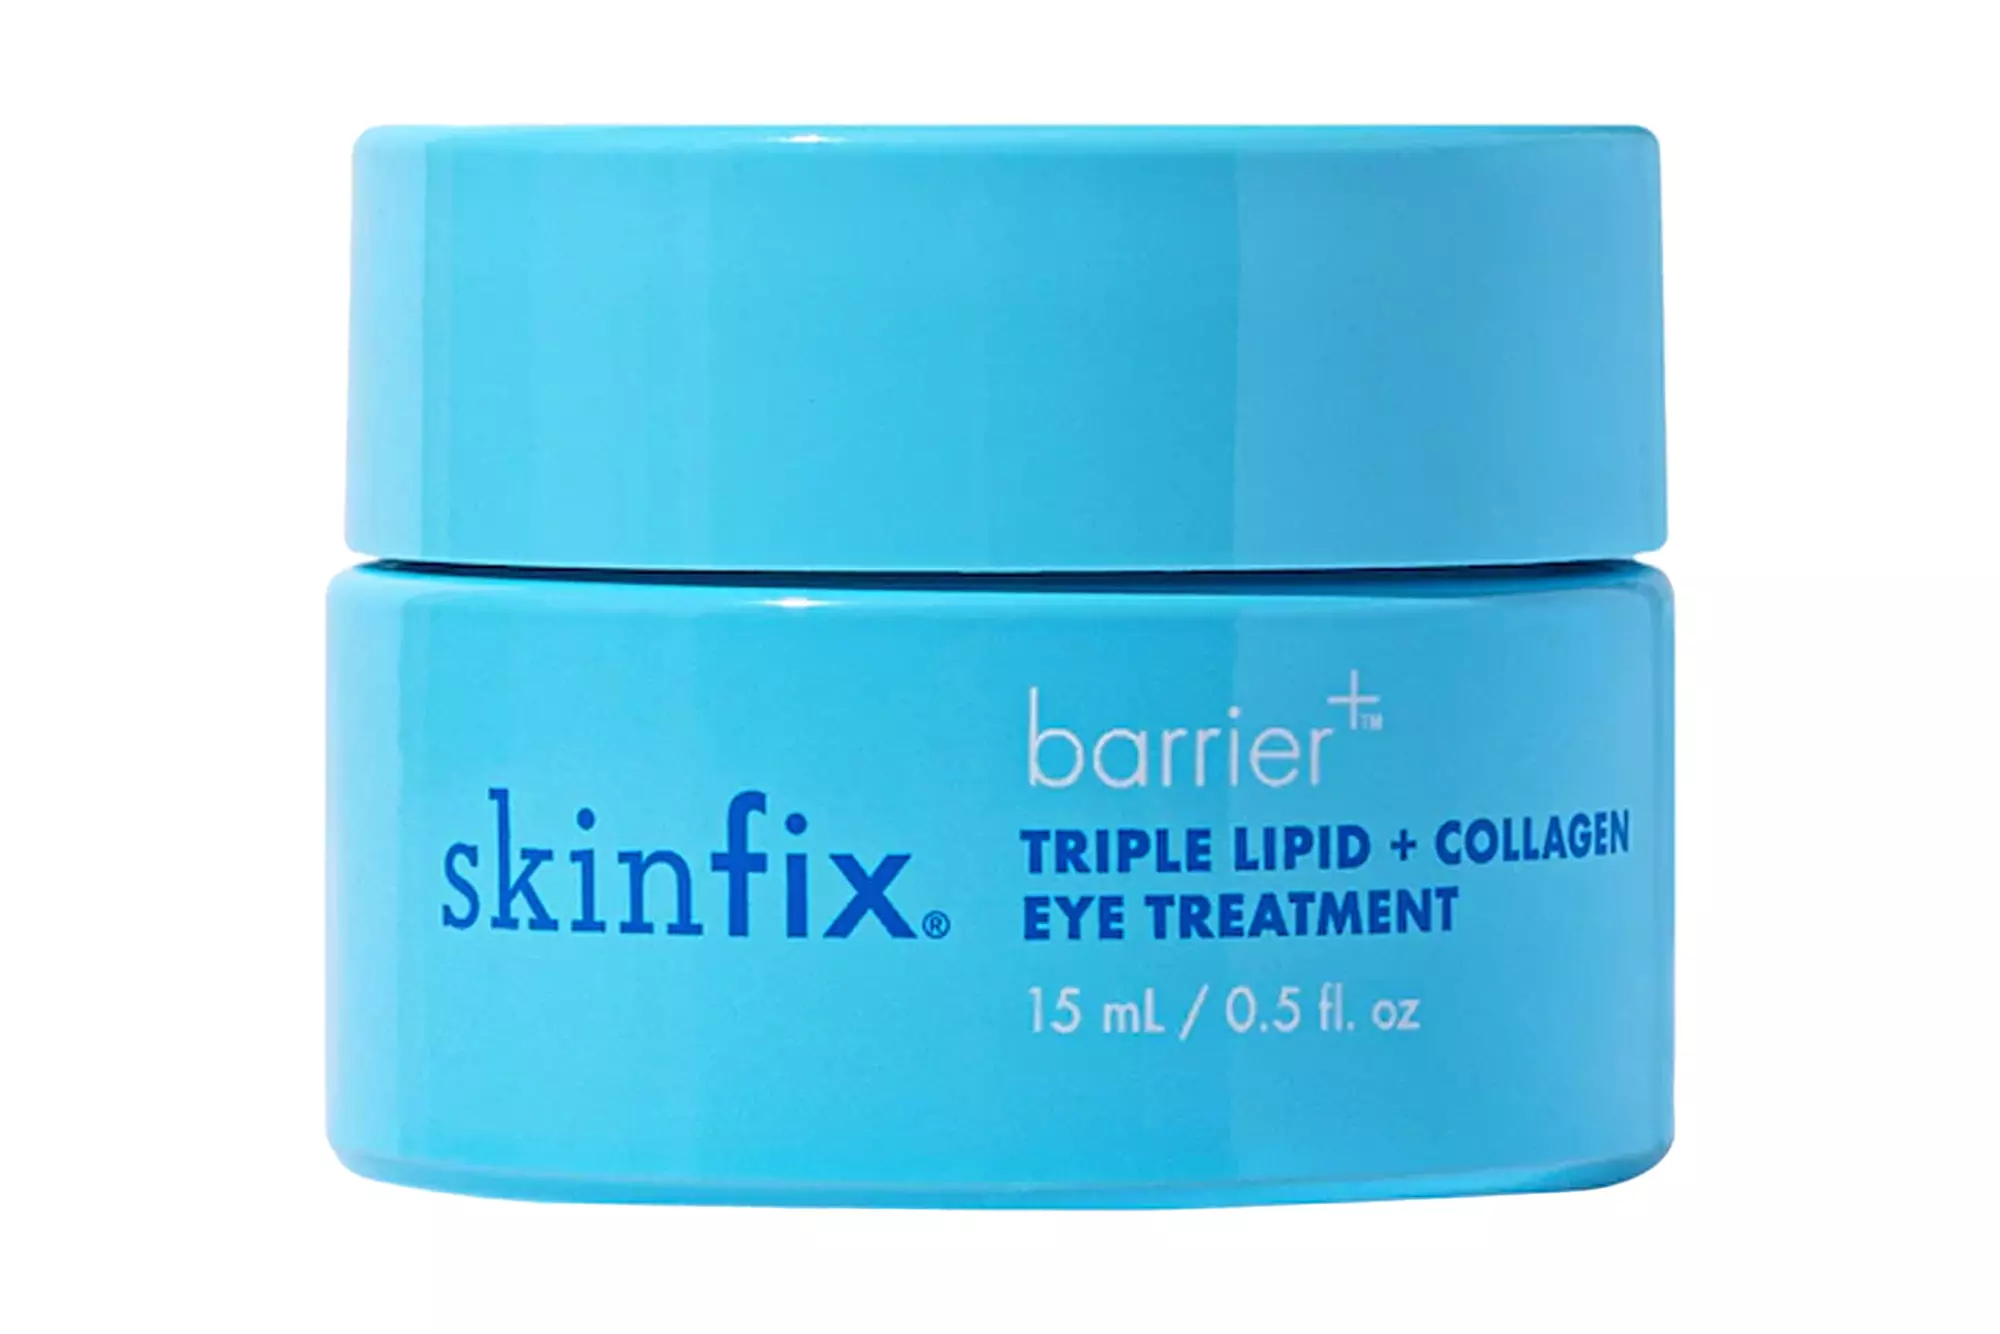 Skinfix barrier+ Triple Lipid + Collagen Brightening Eye Treatment